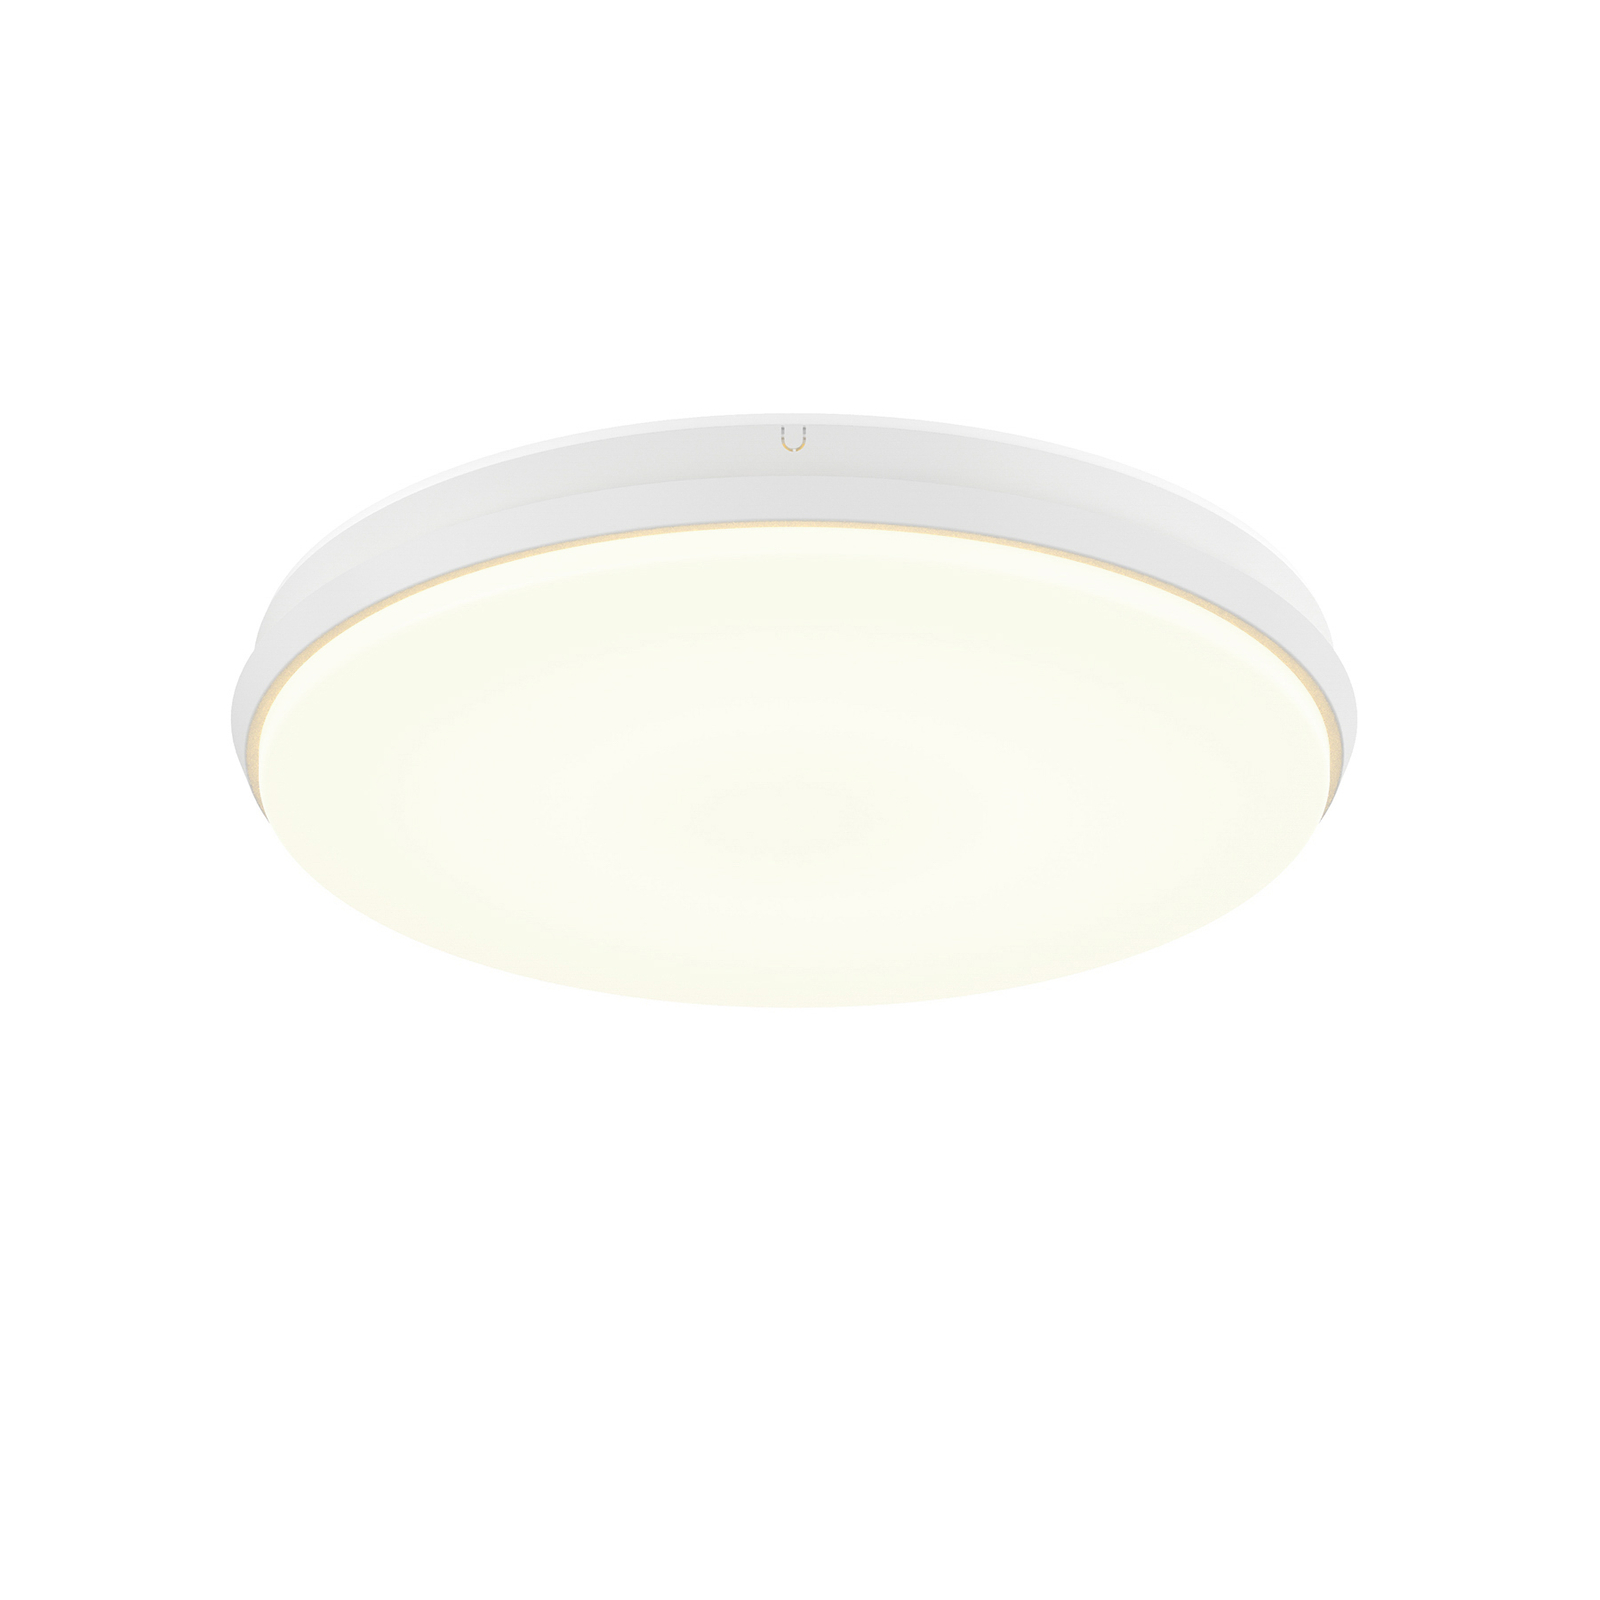 Arcchio Brady lampa sufitowa LED, biała, 30 cm